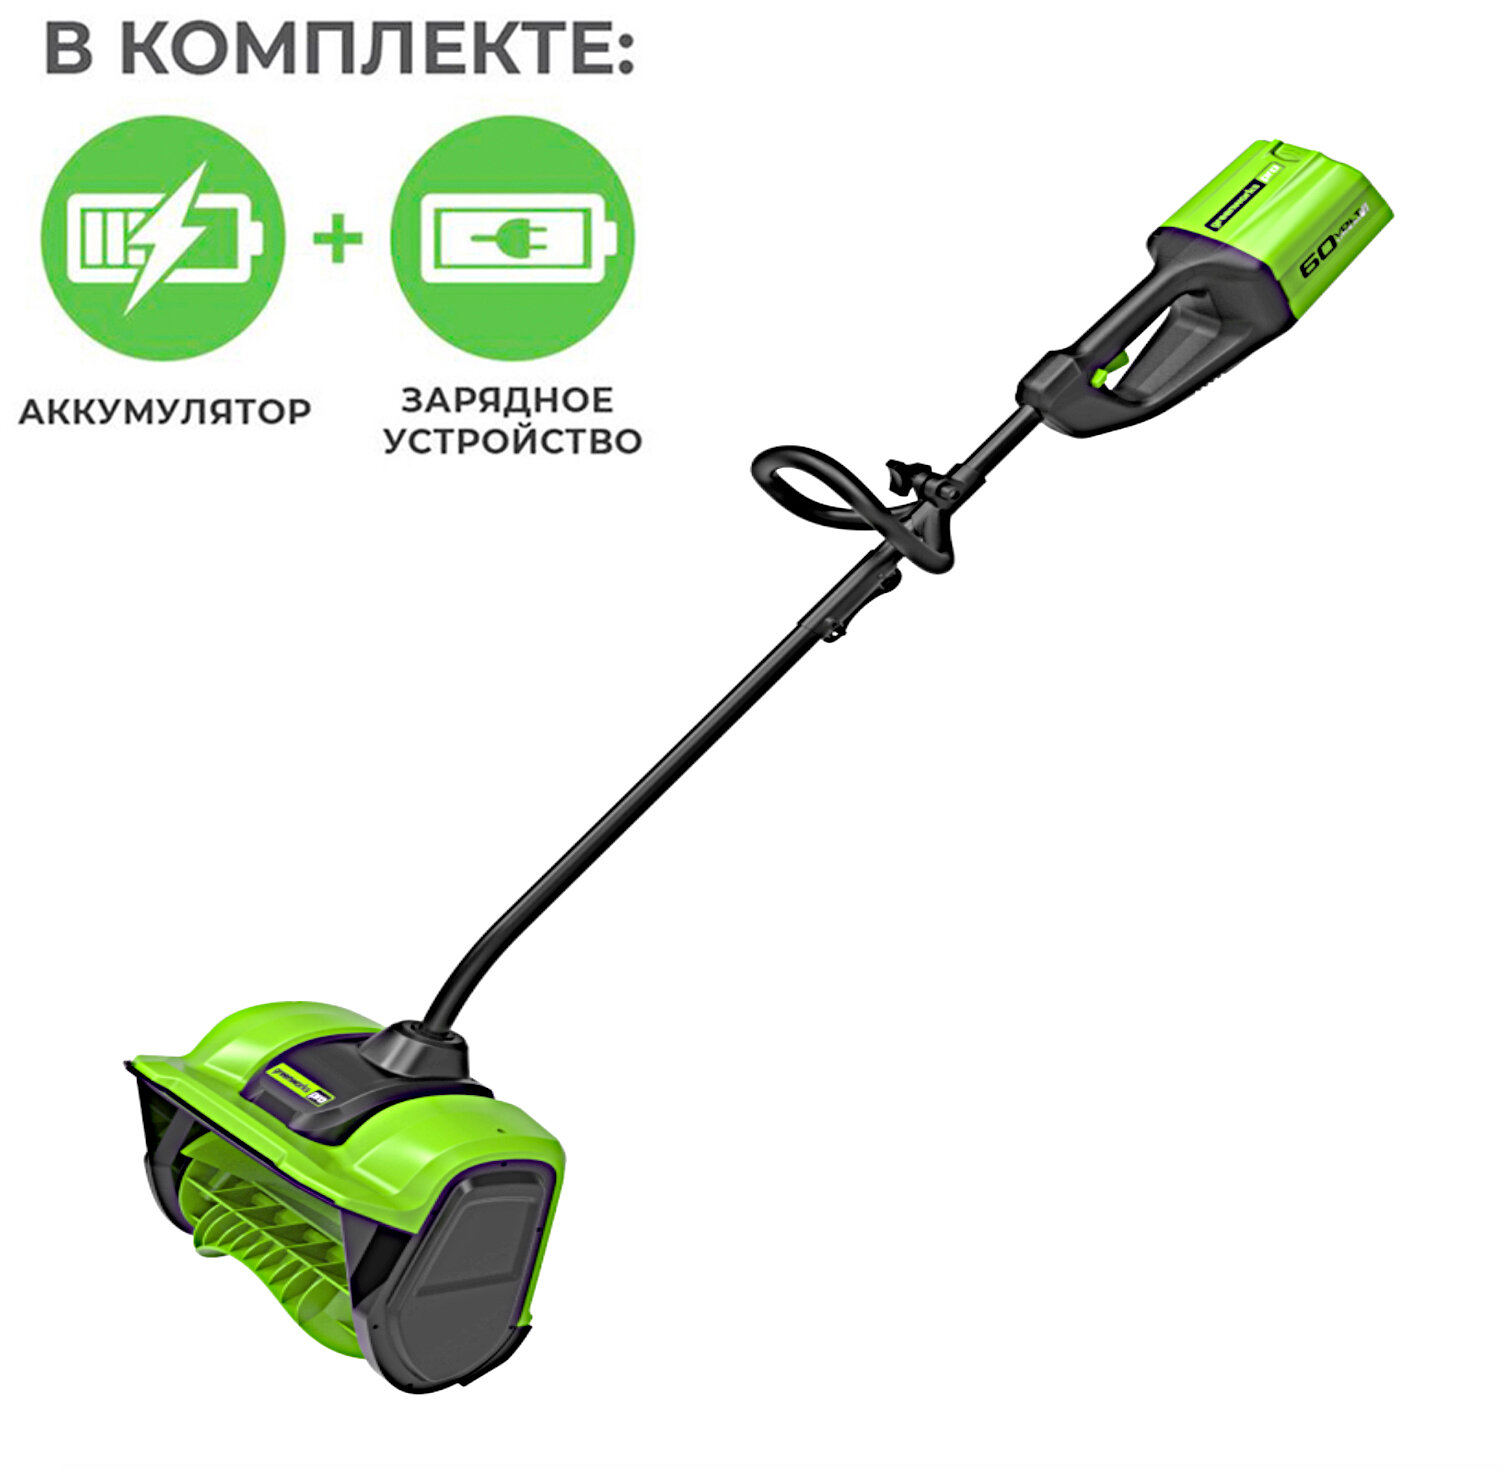 Снегоуборщик-лопата аккумуляторный Greenworks 30 см 60V TBD 2602607 бесщёточный с АКБ на 4 А*ч и ЗУ